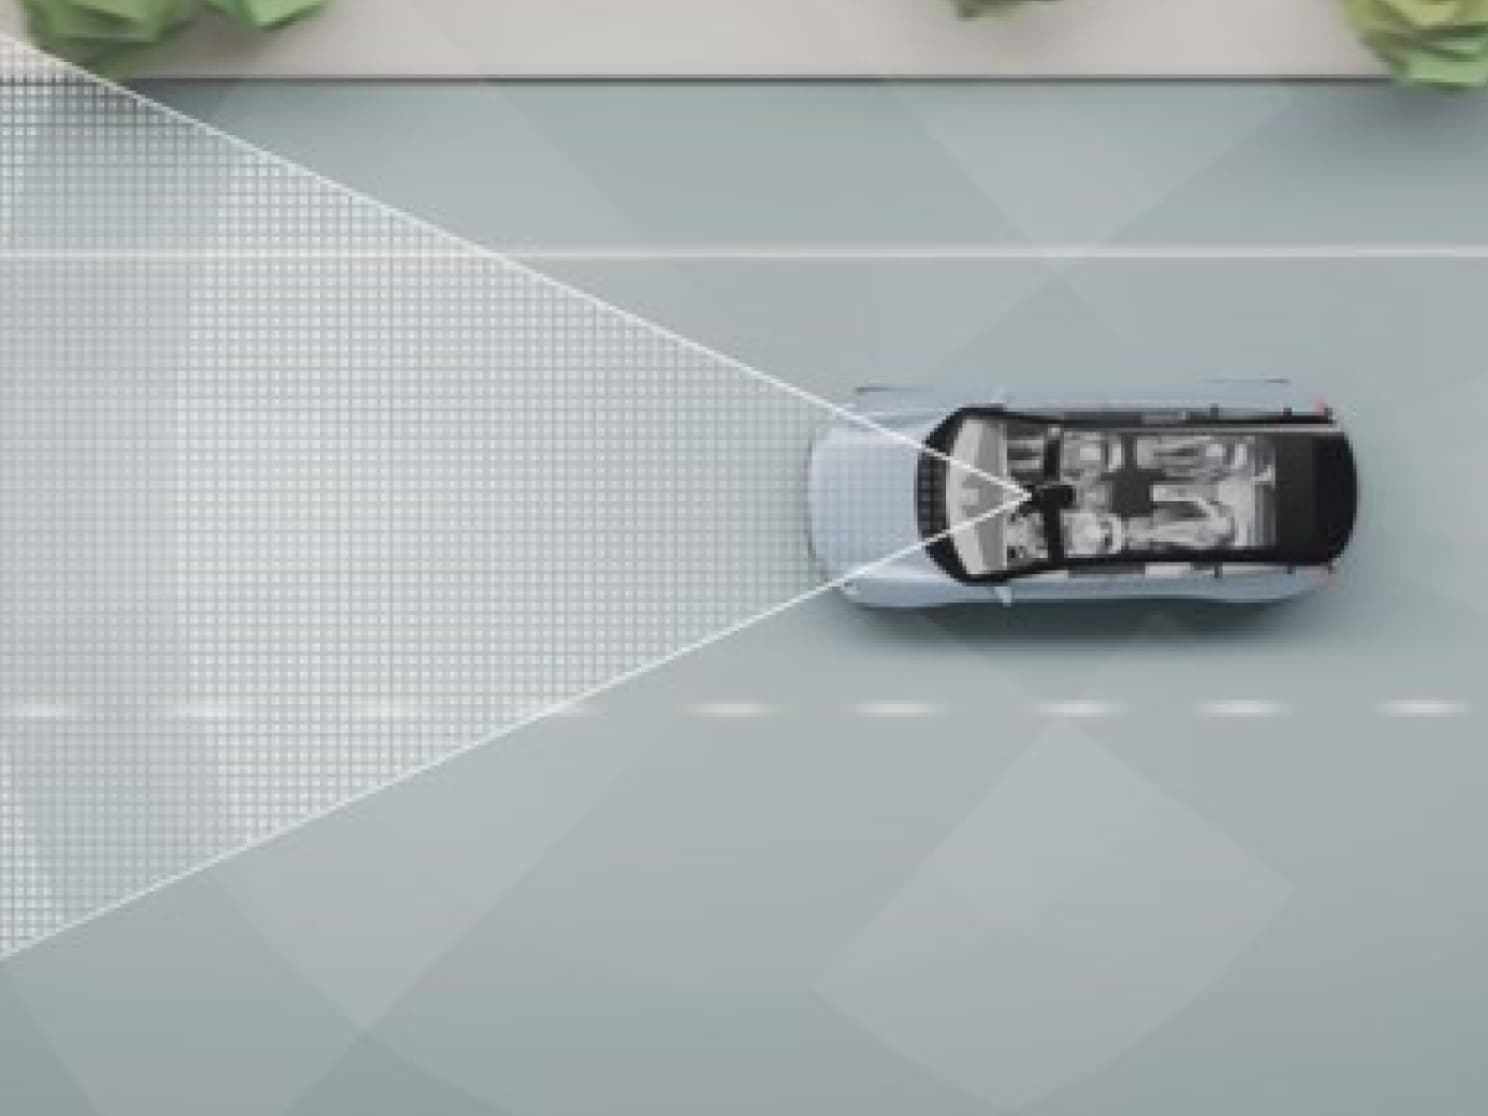 Ψηφιακή απεικόνιση ενός αυτοκινήτου στον δρόμο με γραμμές και άλλα αντικείμενα.